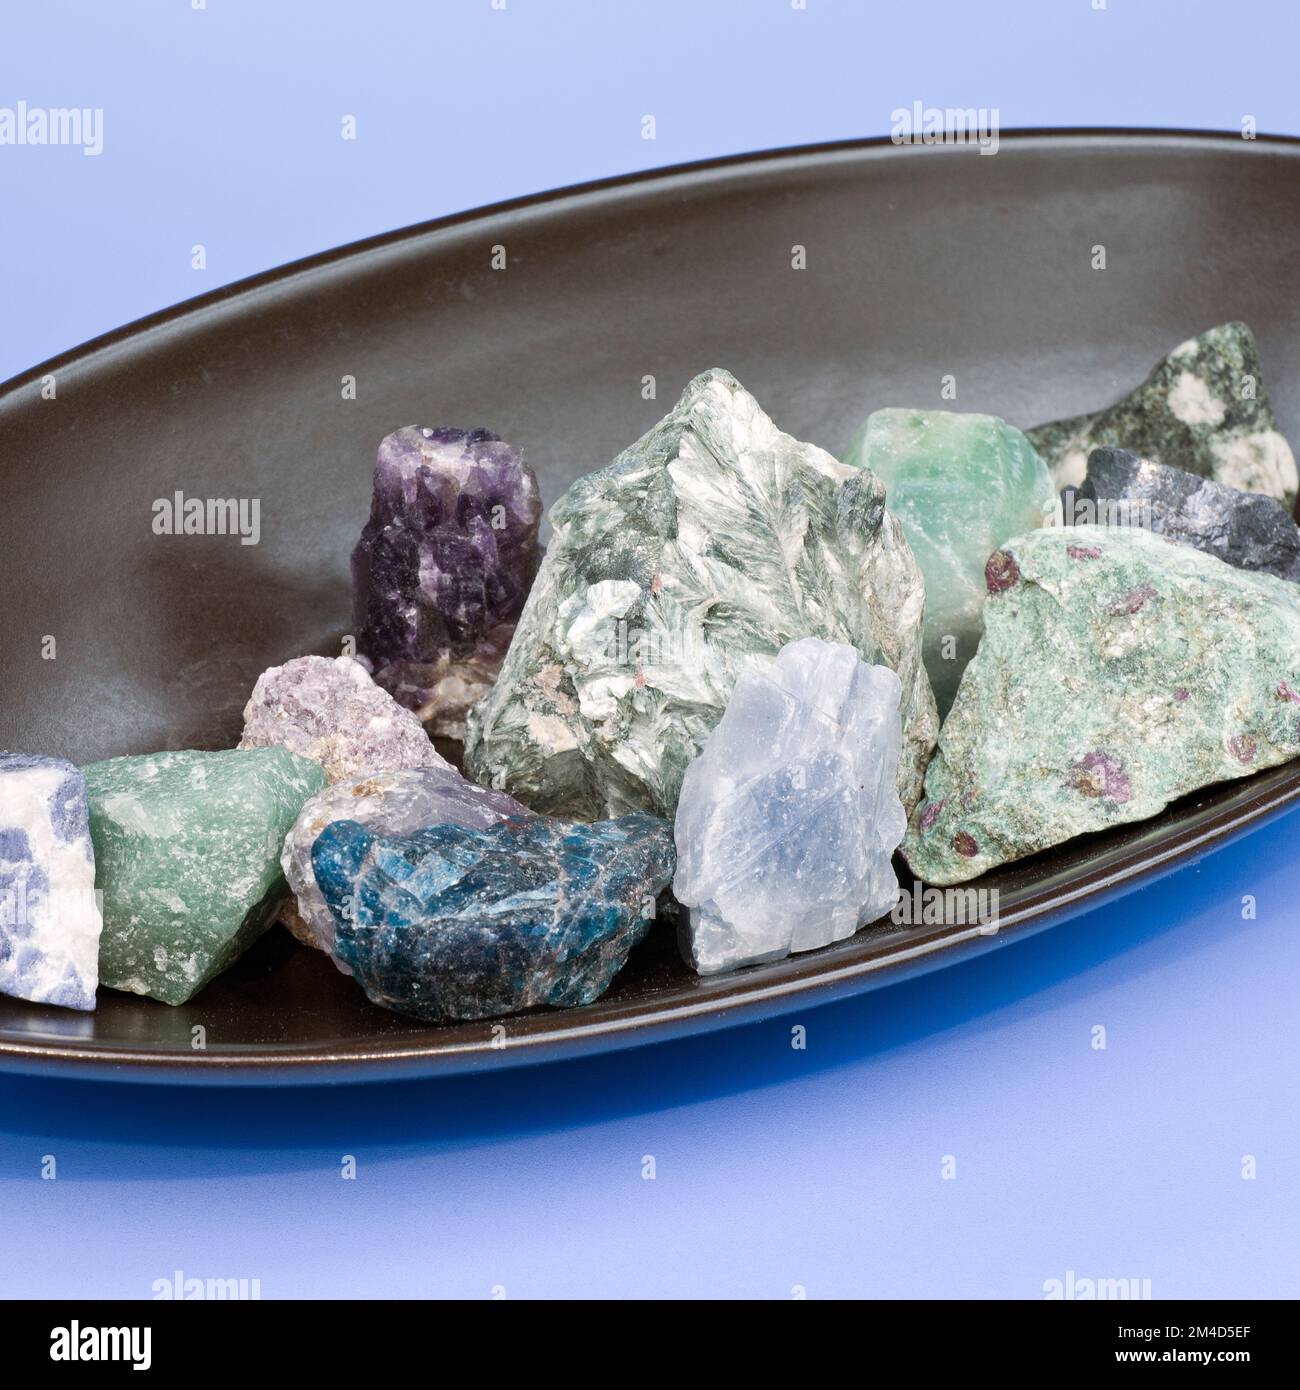 Piedras preciosas verdes en bruto fotografías e imágenes de alta resolución  - Alamy